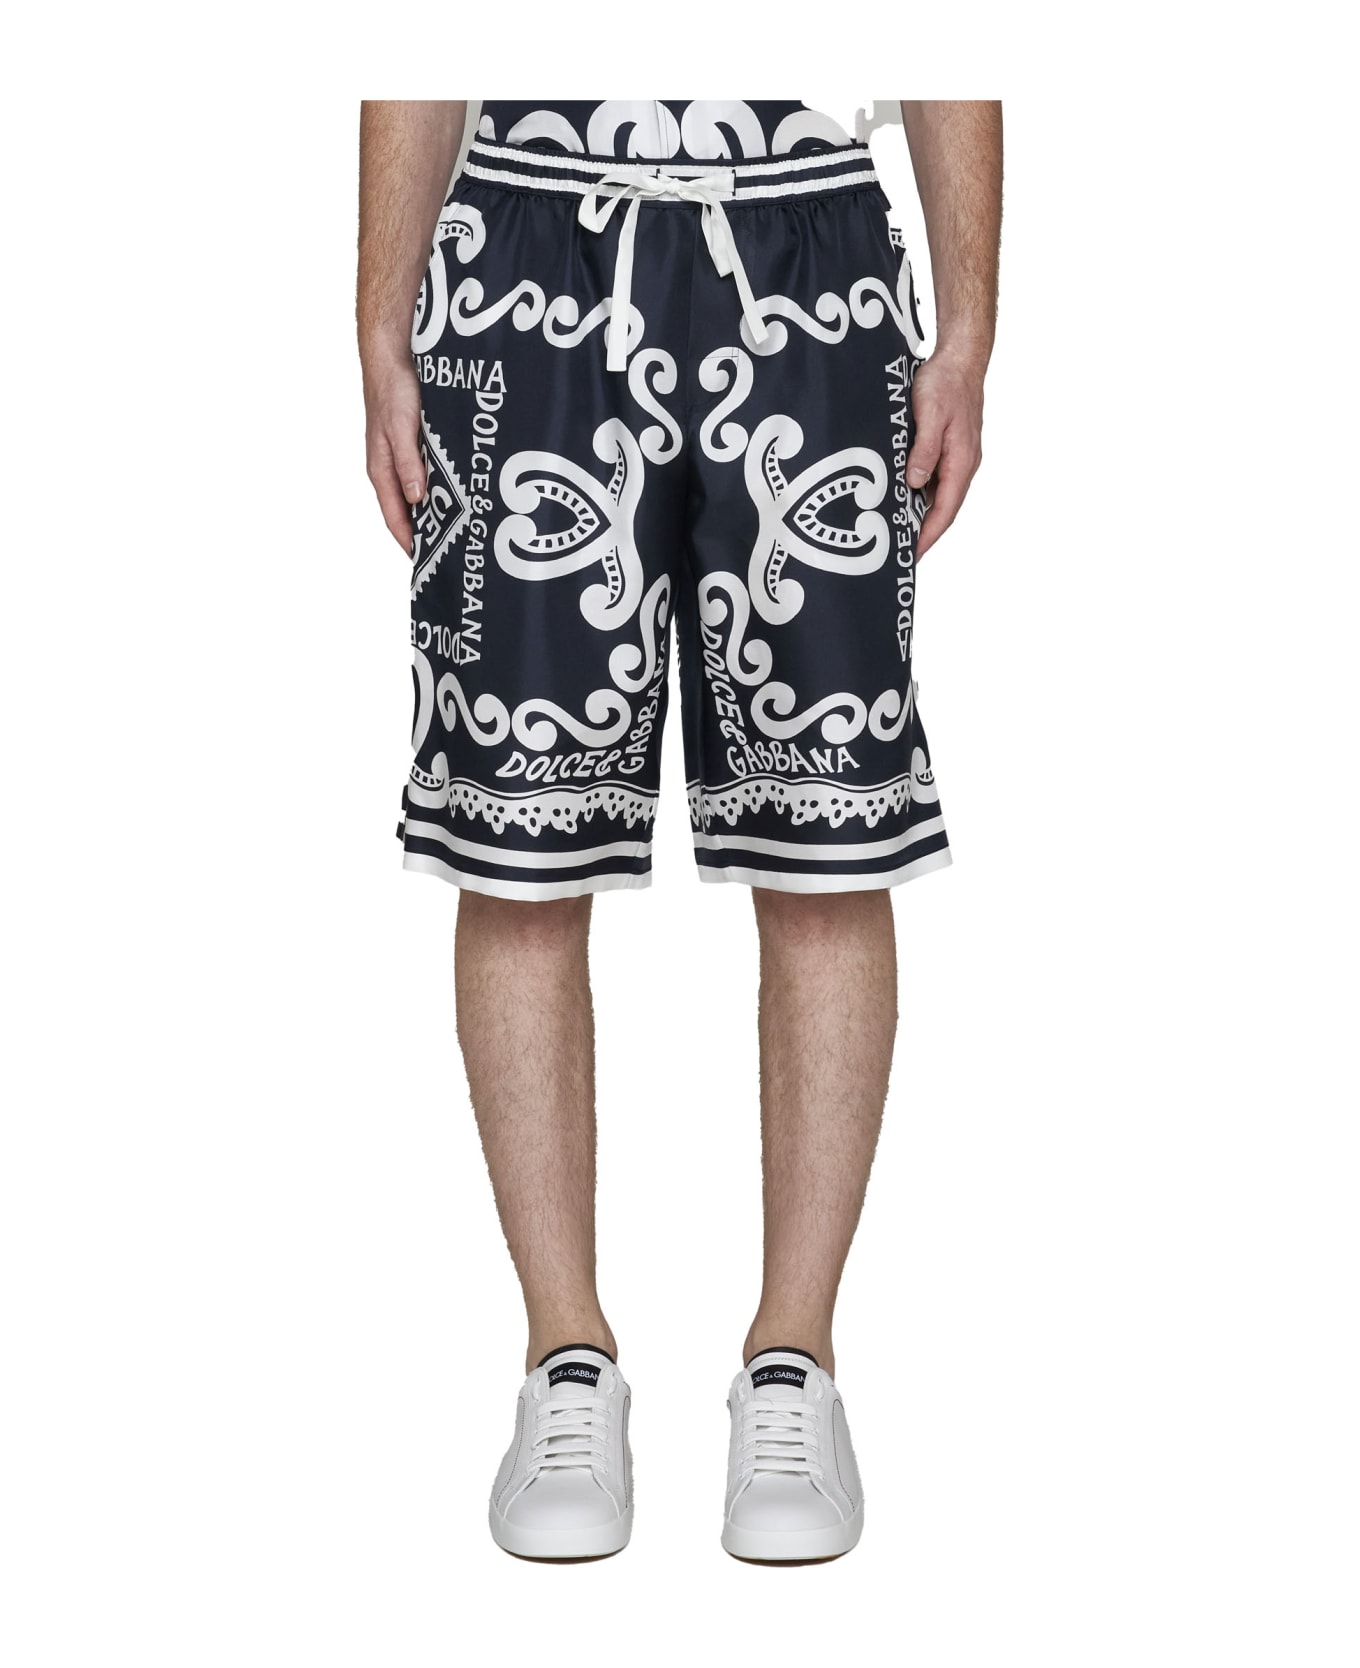 Dolce & Gabbana Bermuda Shorts - Dg Marina Blu